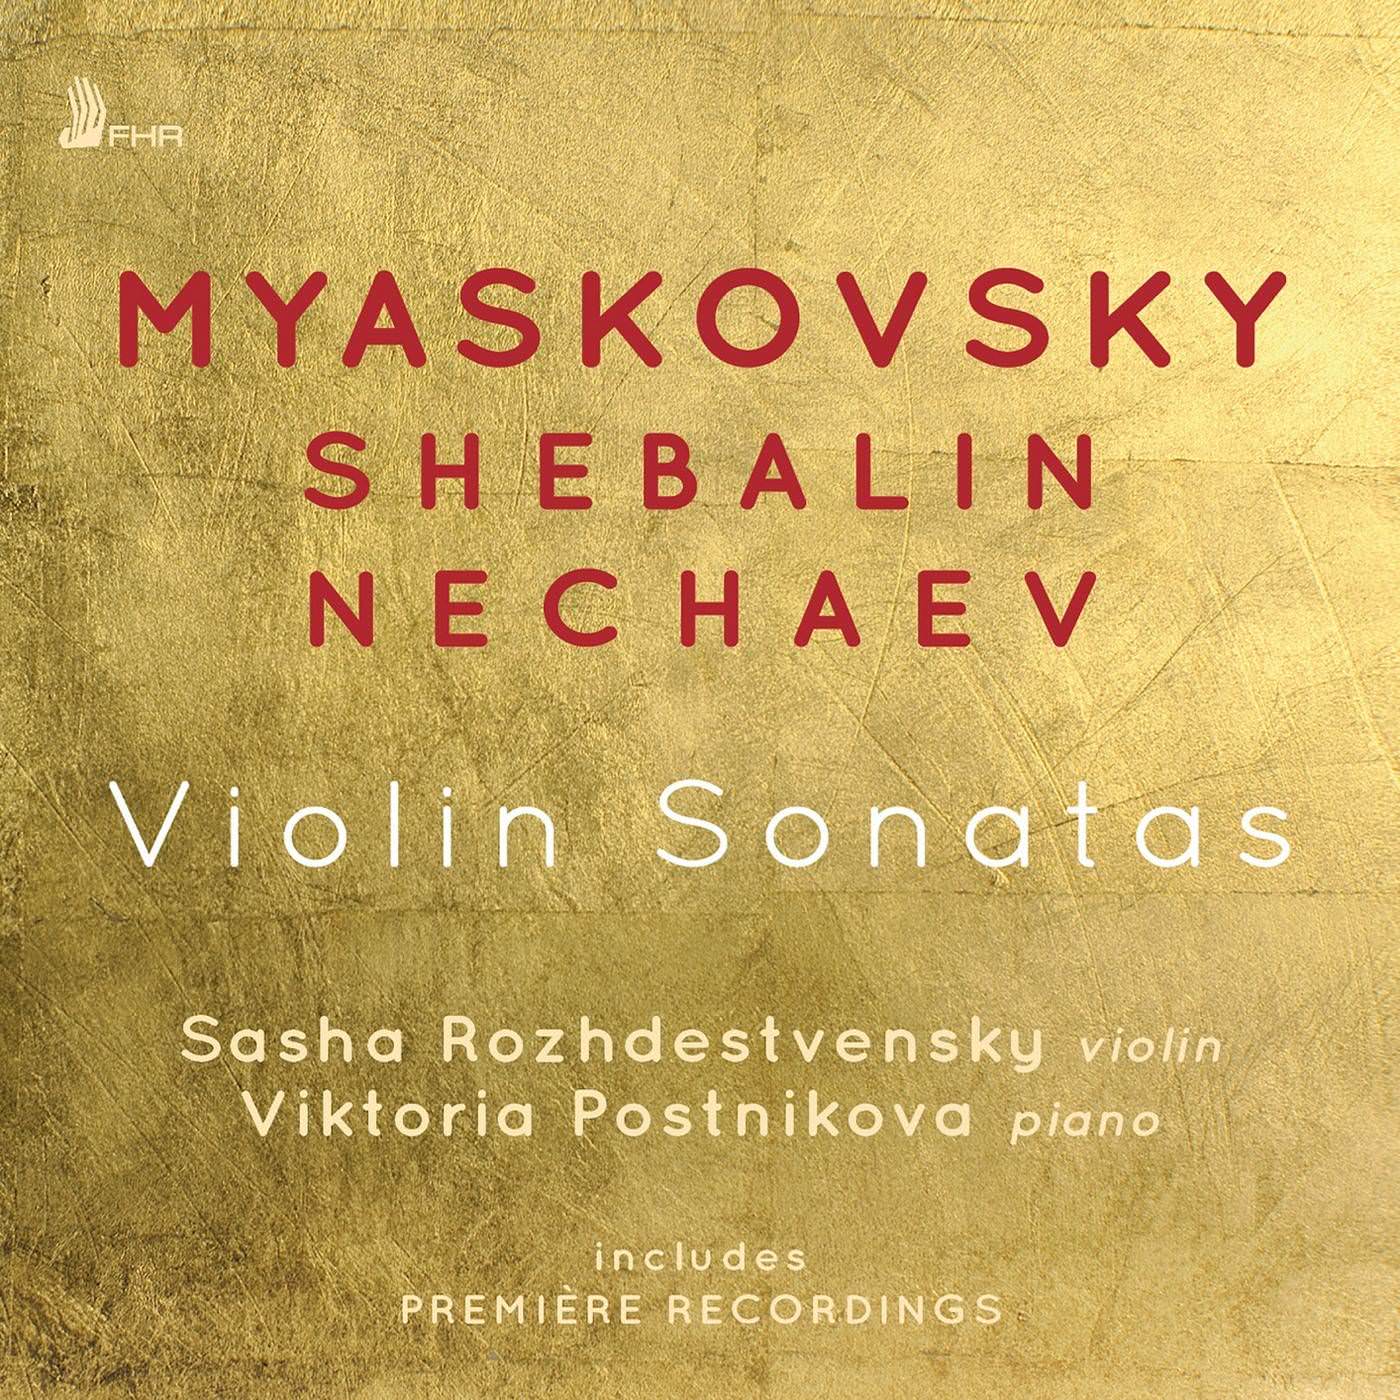 Sasha Rozhdestvensky & Viktoria Postnikova – Myaskovsky, Shebalin & Nechaev: Violin Sonatas (2018) [FLAC 24bit/96kHz]